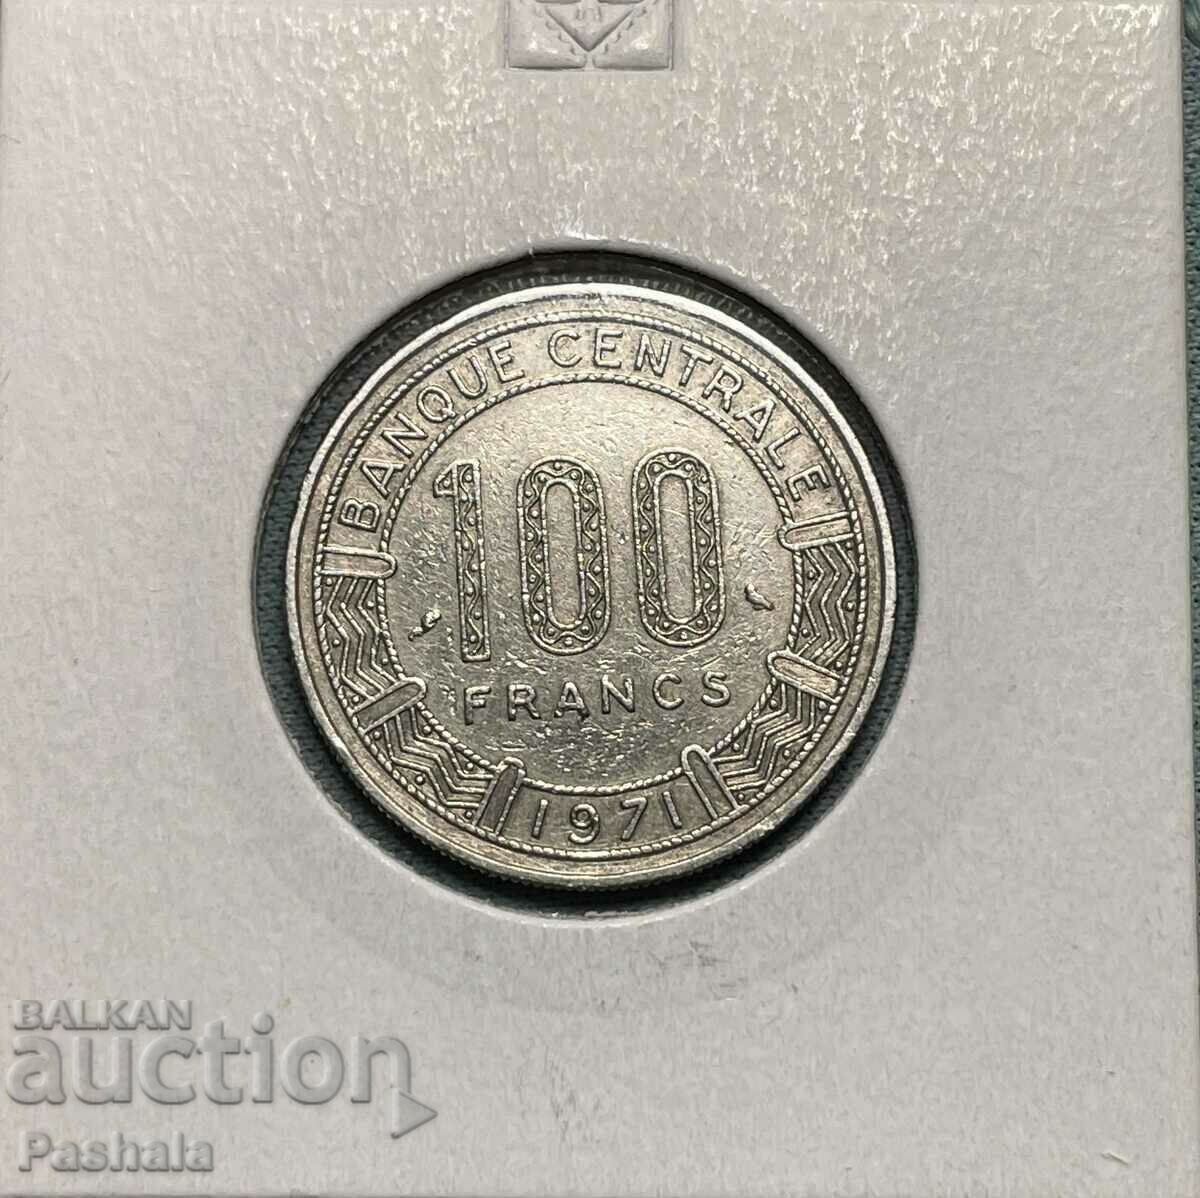 Cameroon 100 francs 1971